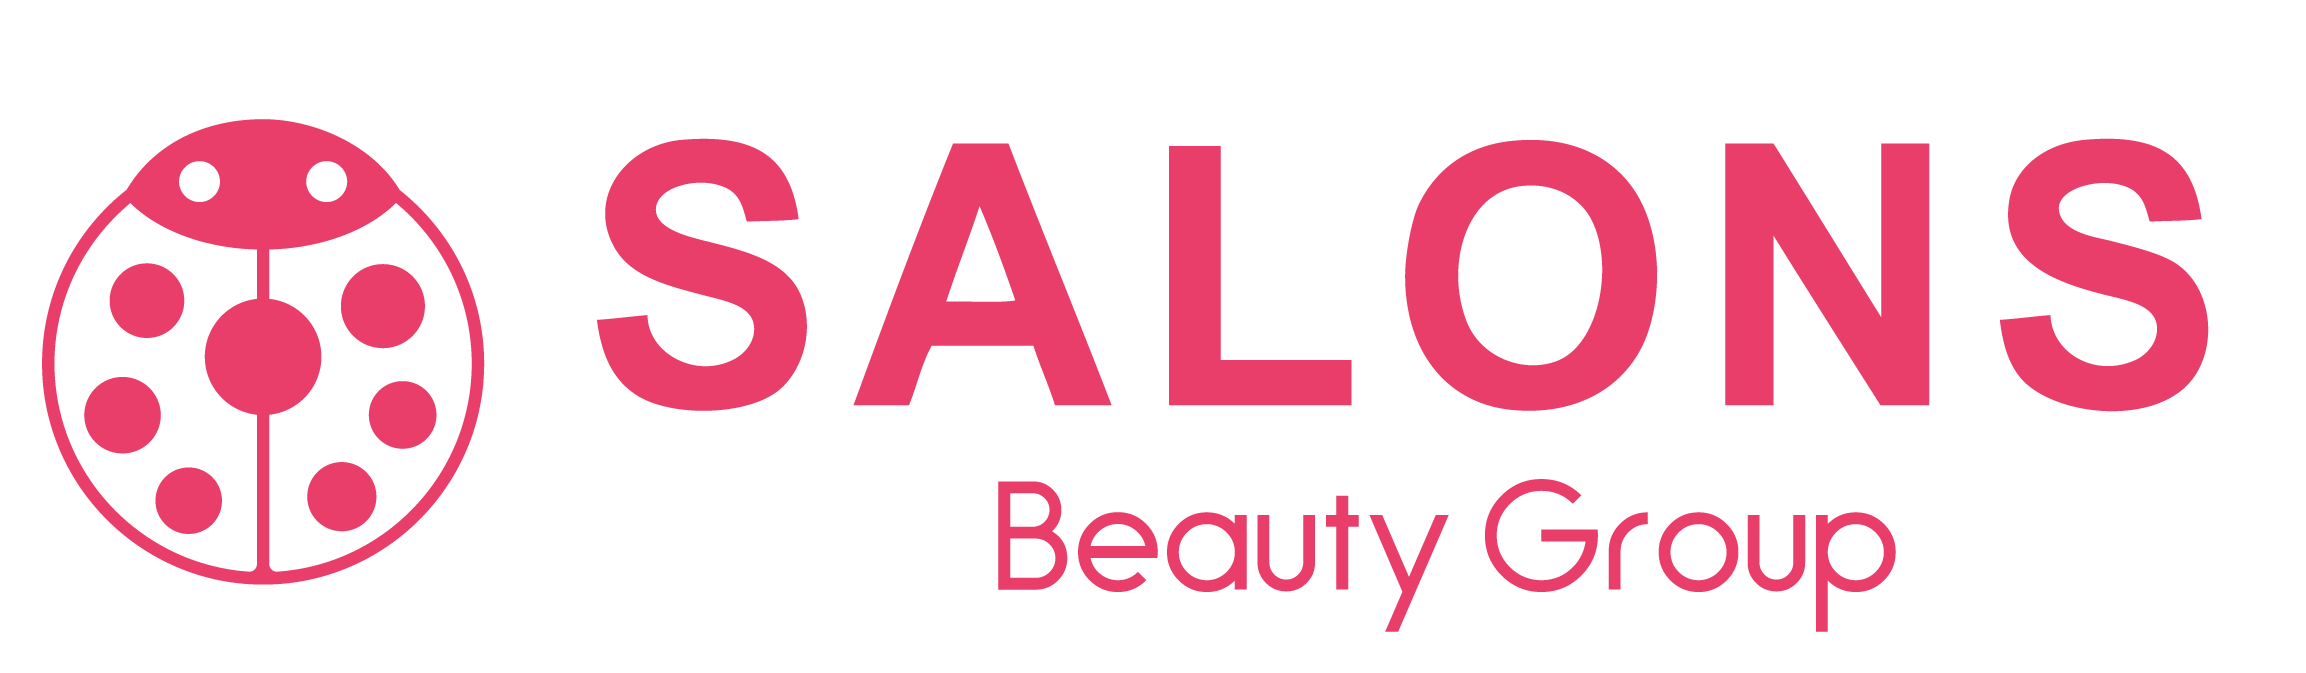 美容室 SALONS Beauty Group ホームページ